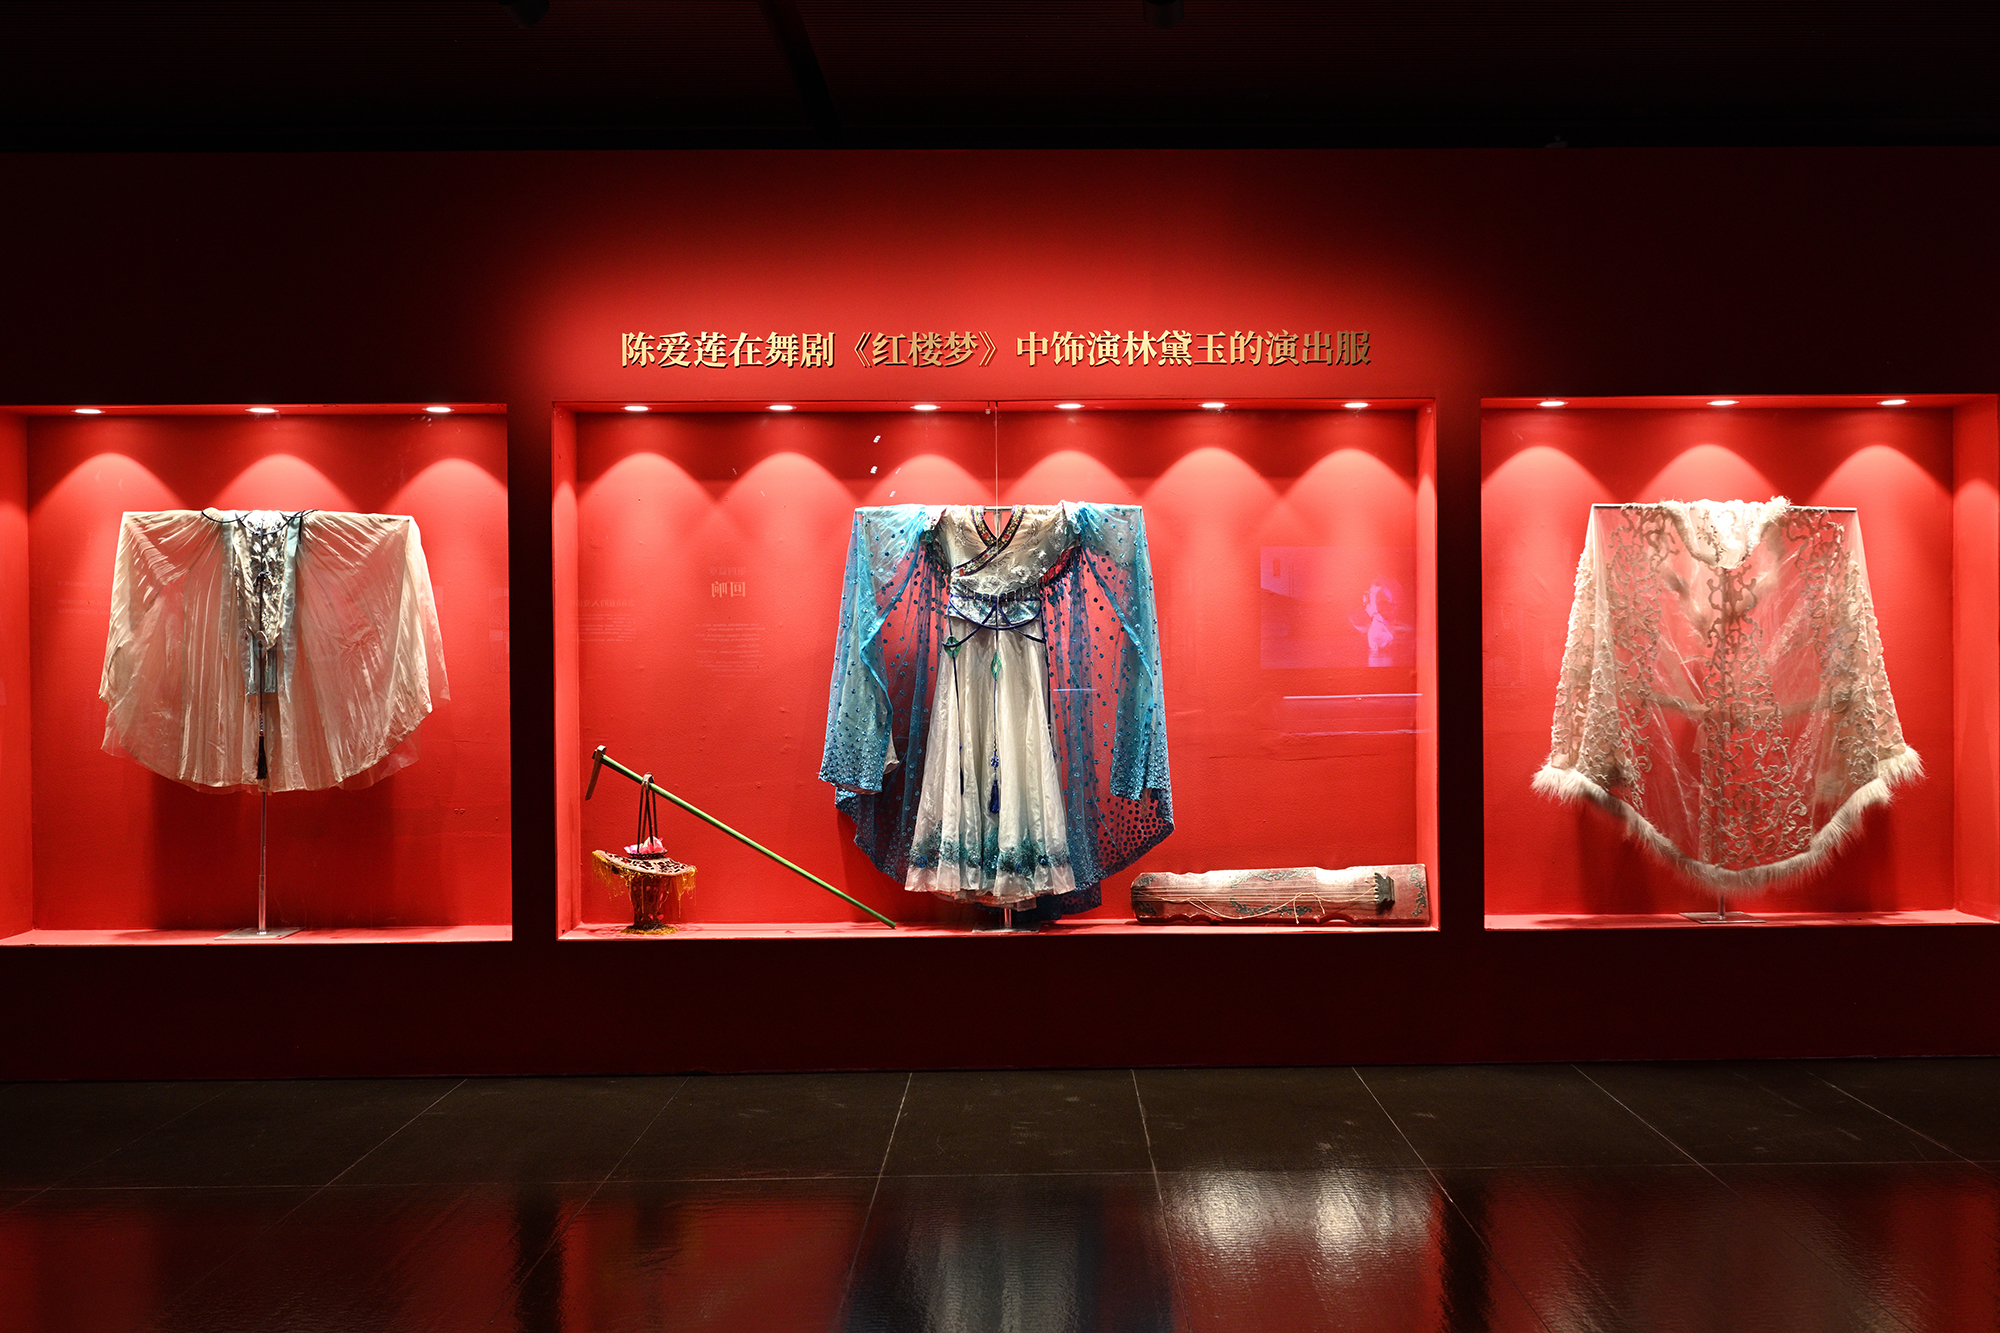 《共和国的红舞鞋——陈爱莲的舞蹈艺术人生》主题展览正式开展